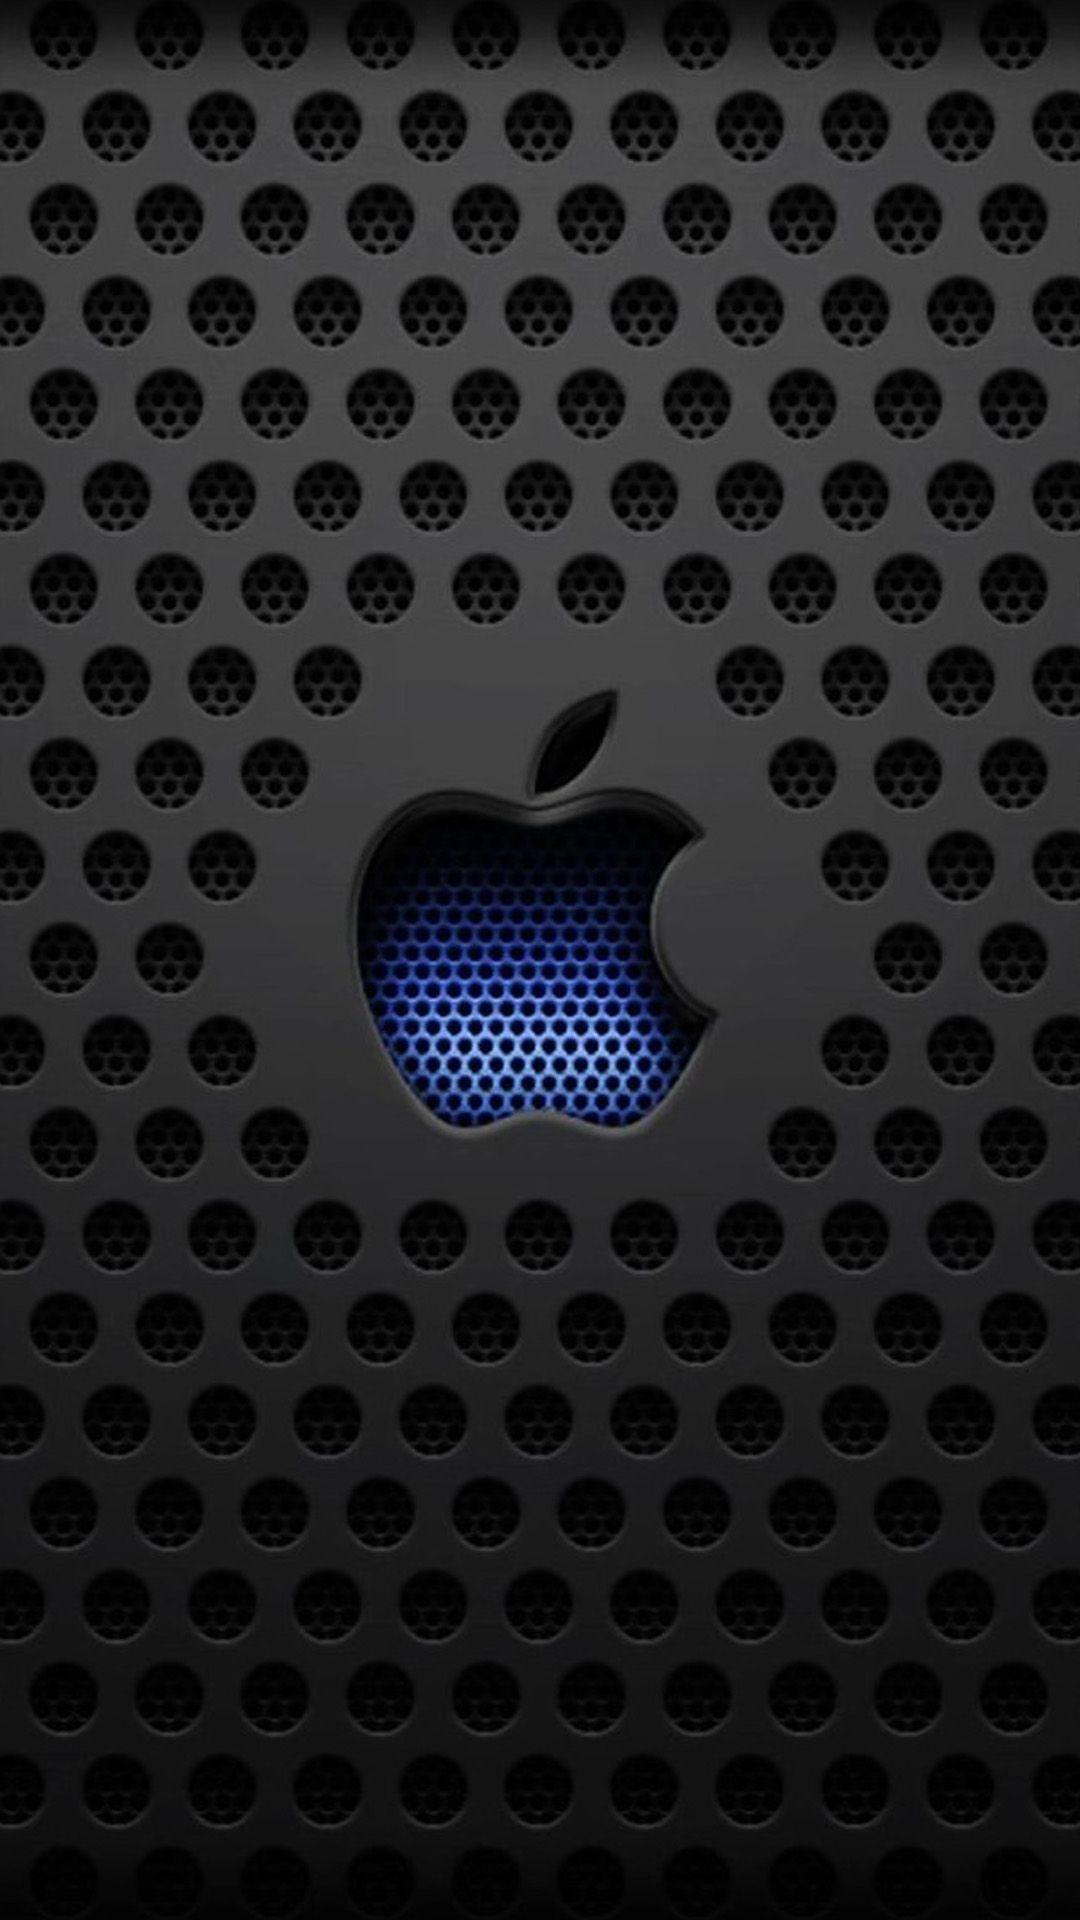 Phone background. Apple logo